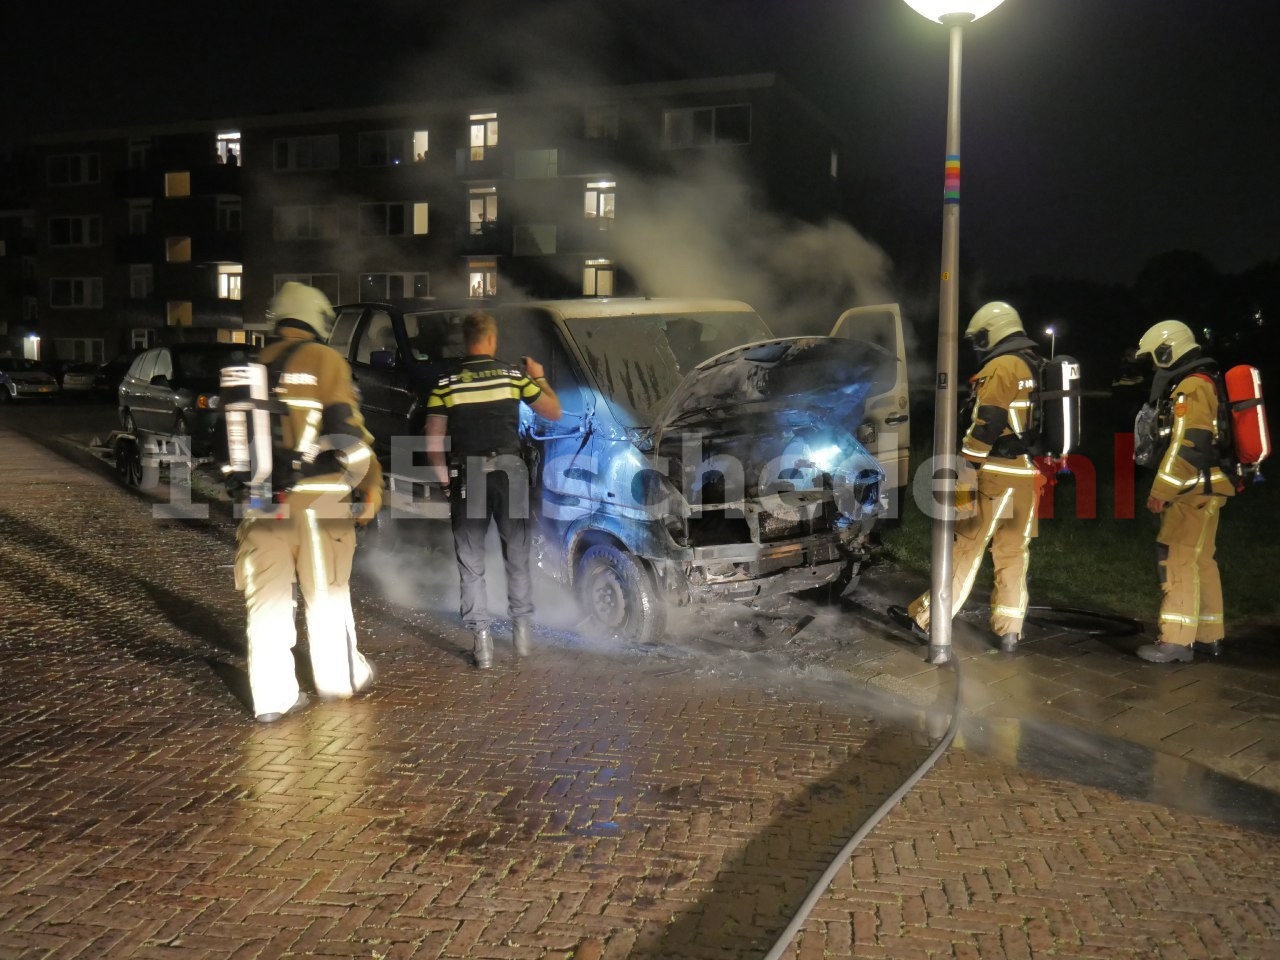 Autoambulance verwoest door brand in Enschede, politie doet onderzoek